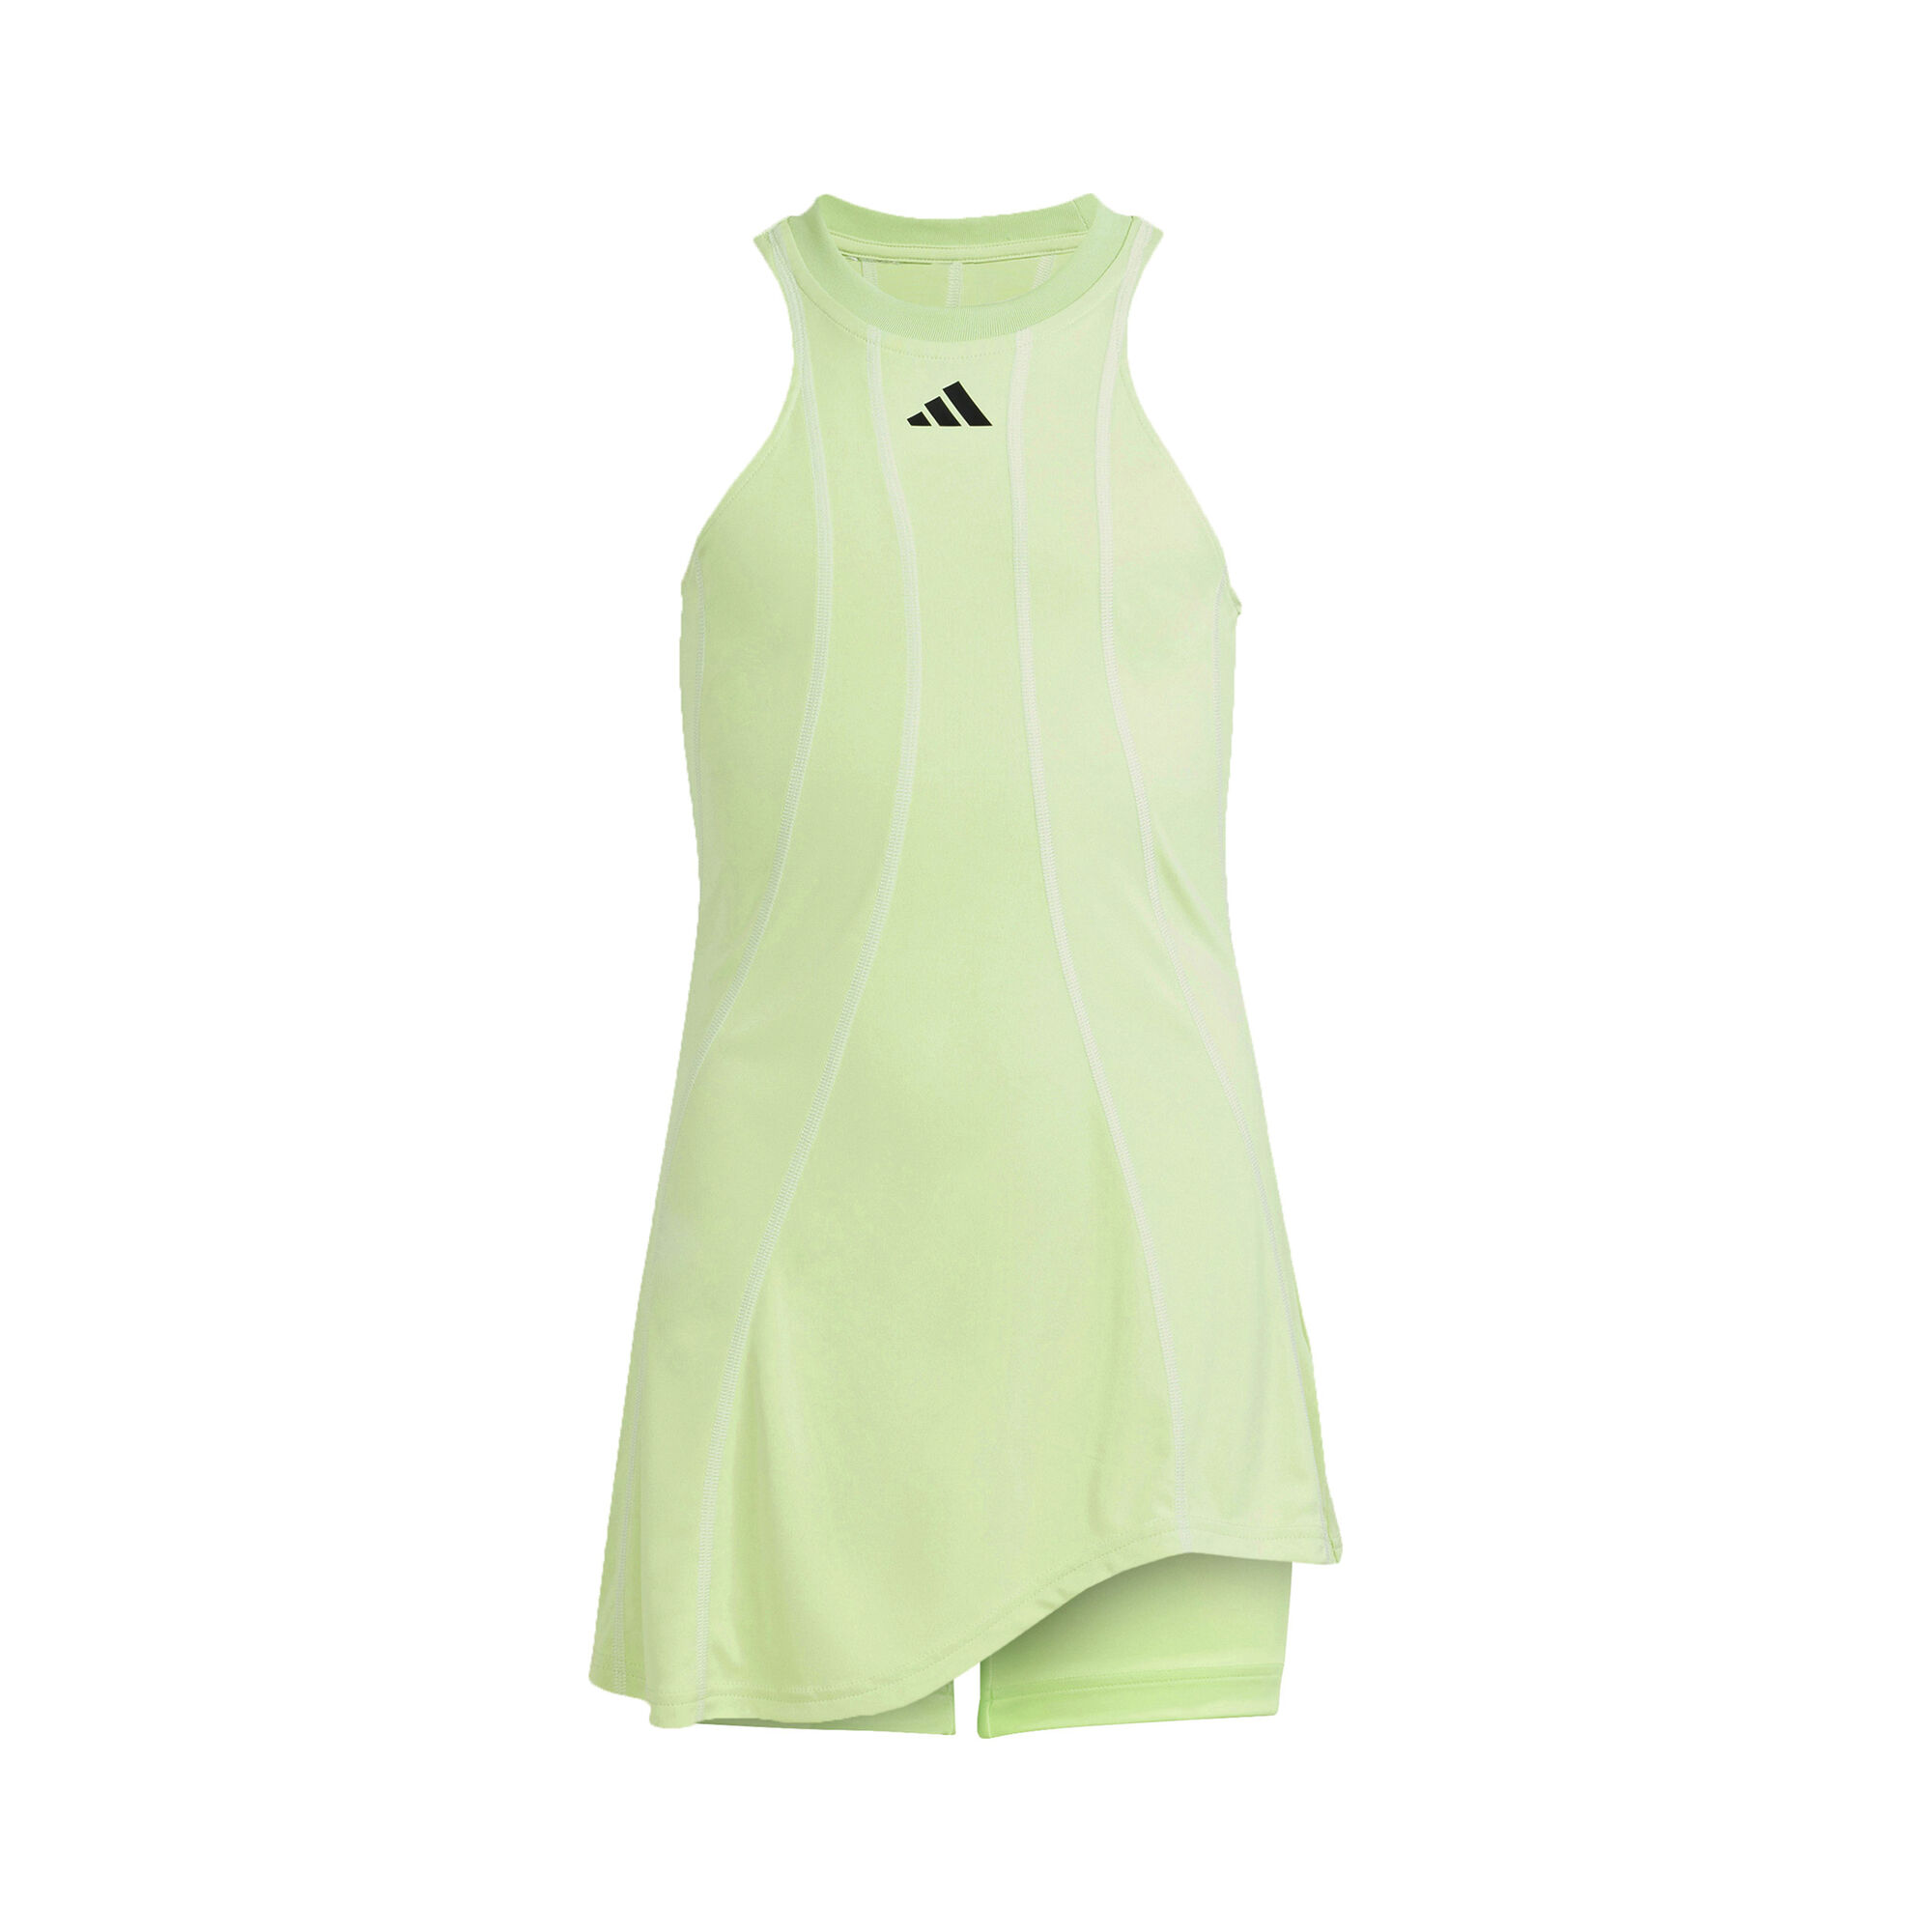 Buy adidas Pro Dress Girls Light Green online | Tennis Point COM